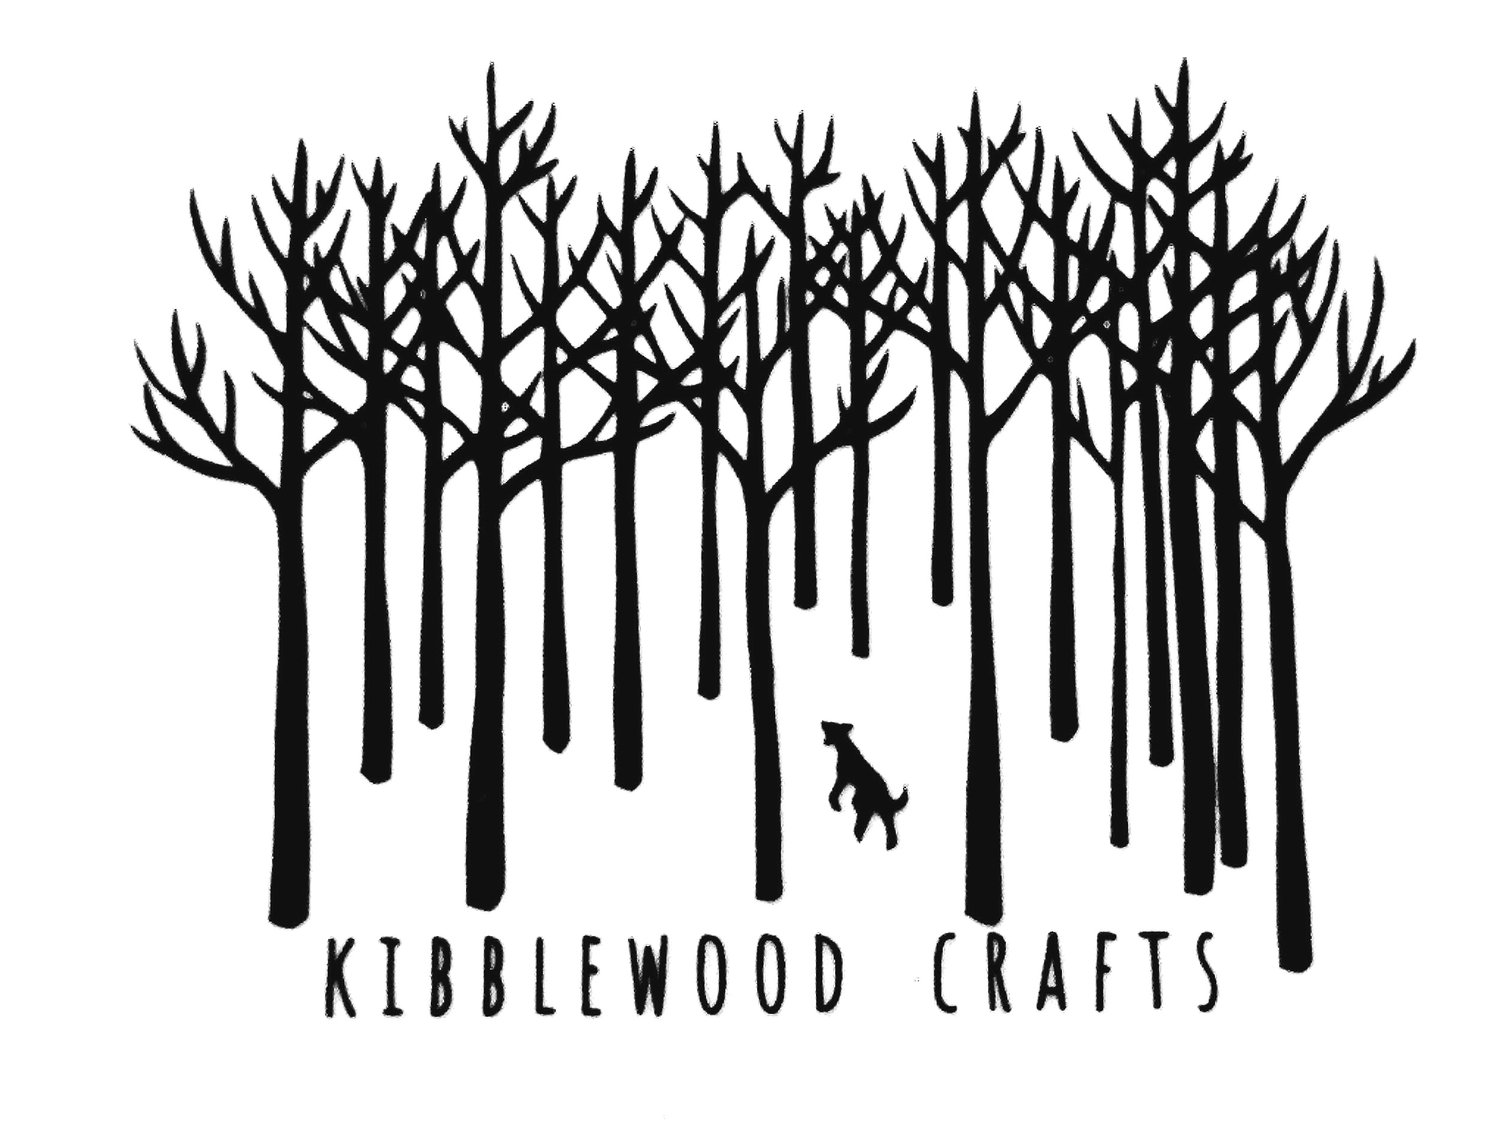 Kibblewood Crafts